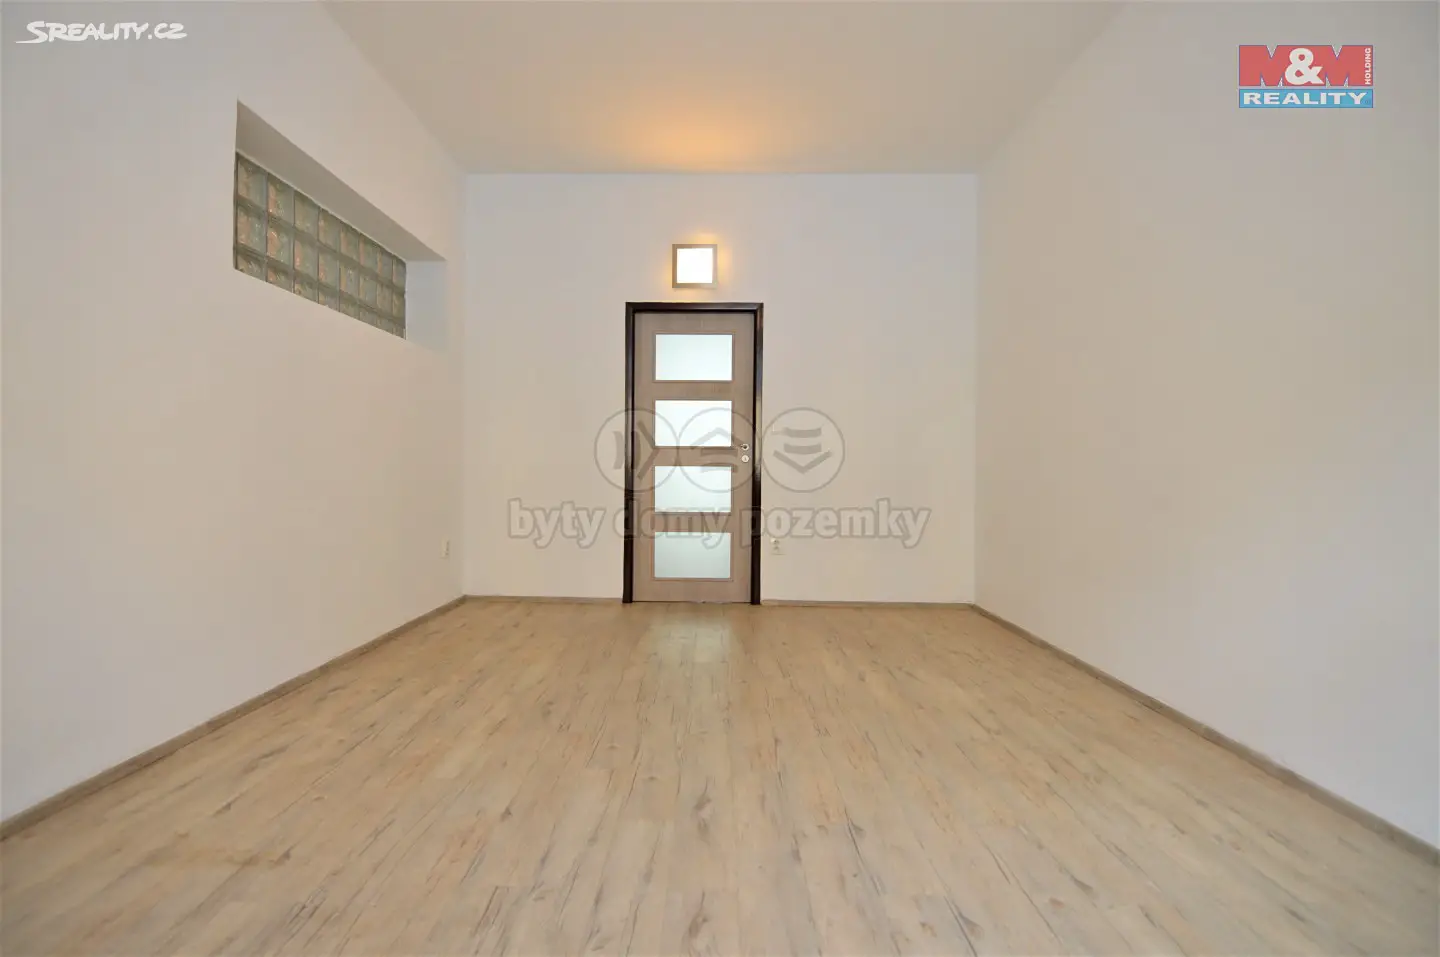 Pronájem bytu 1+1 58 m², Komenského, Hradec Králové